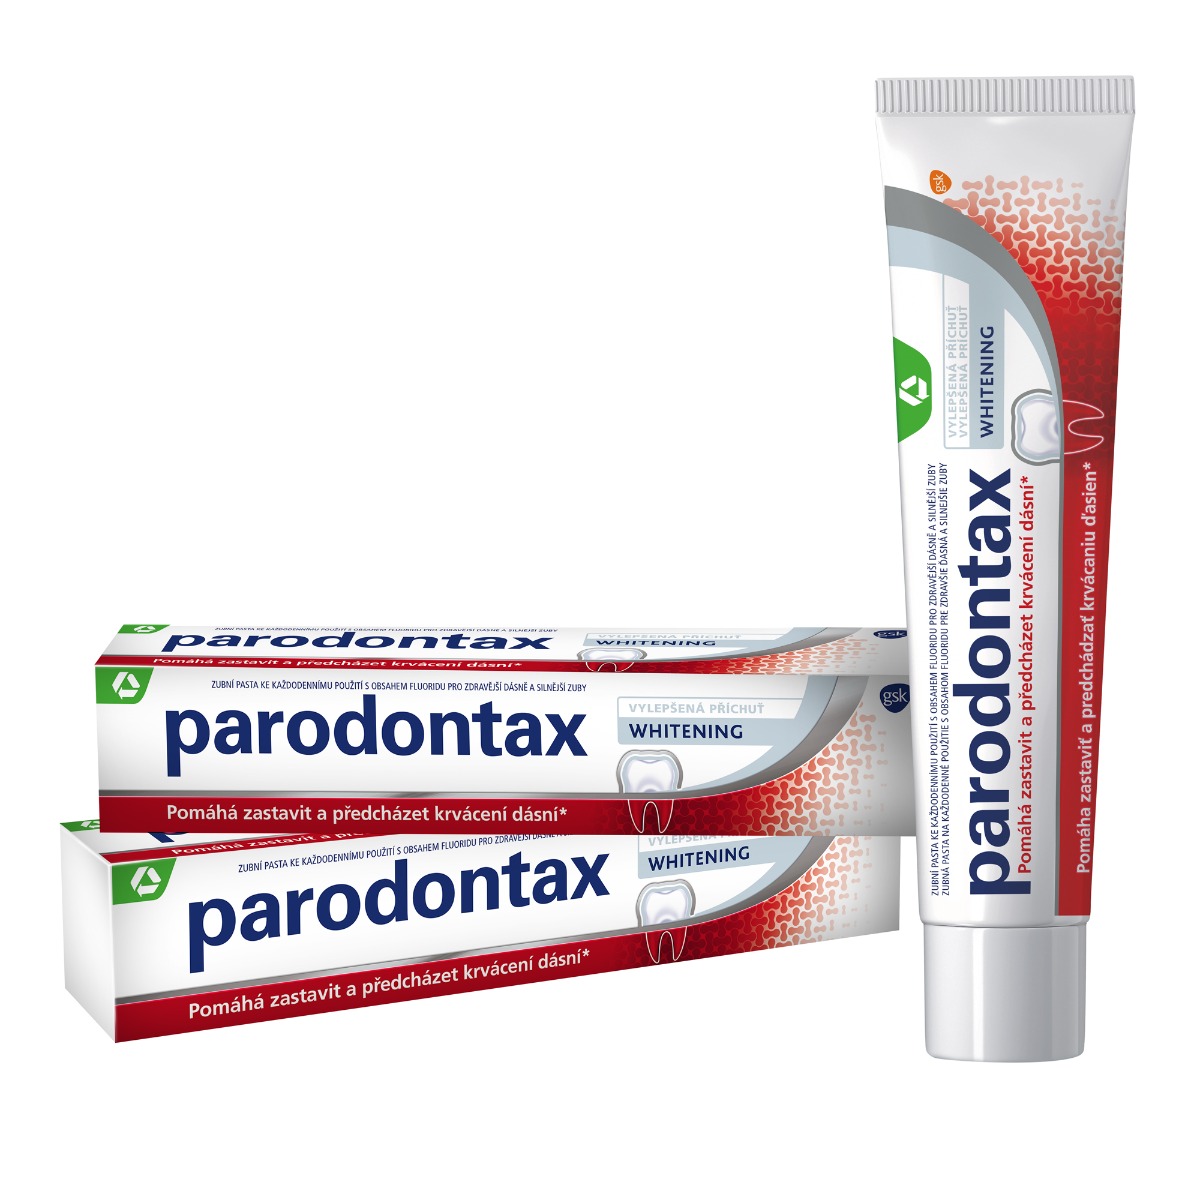 Parodontax Whitening zubní pasta 2x75 ml Parodontax